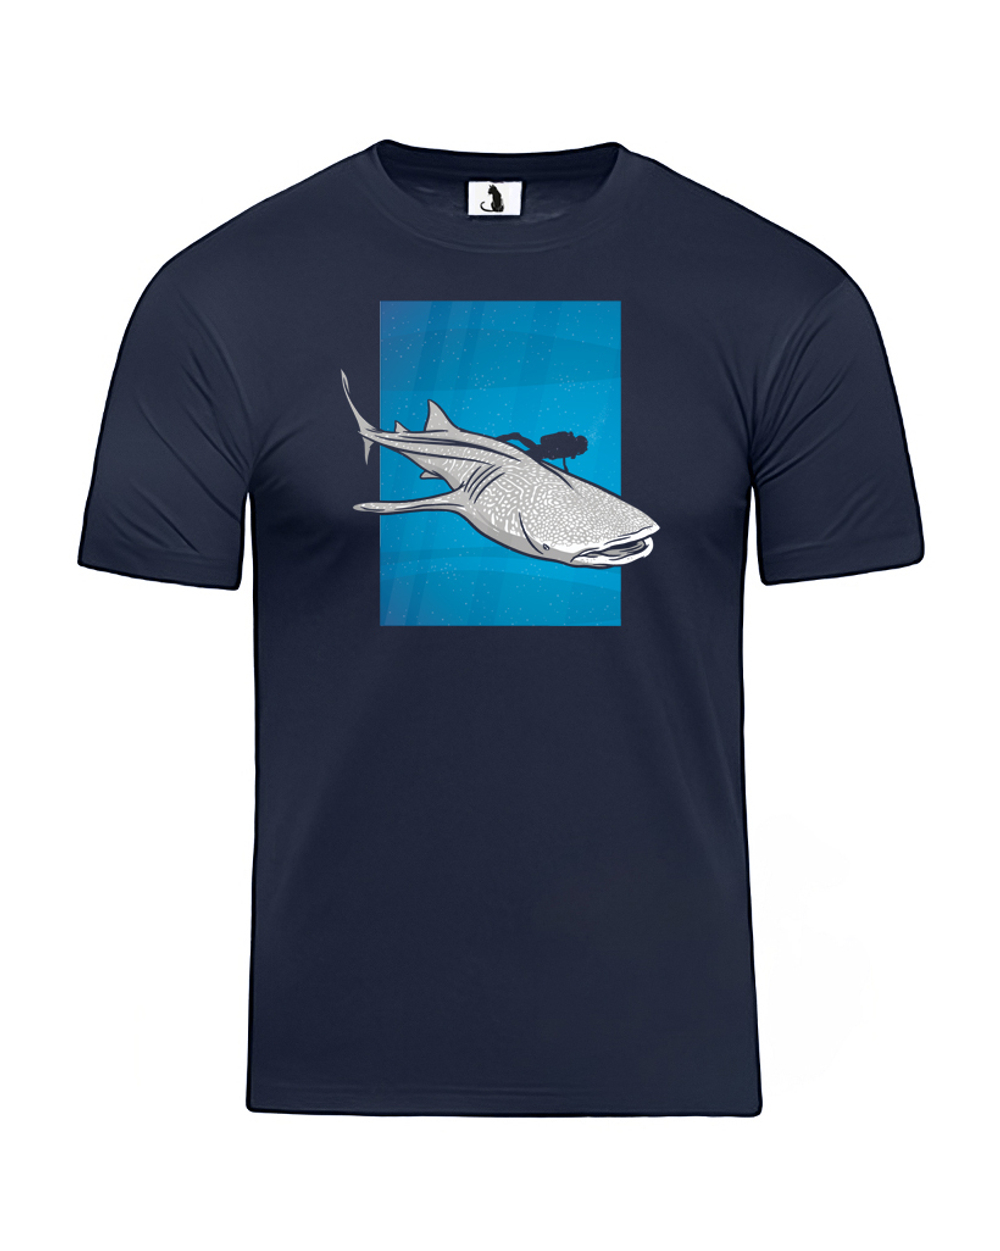 Футболка Китовая акула мужская темно-синяя